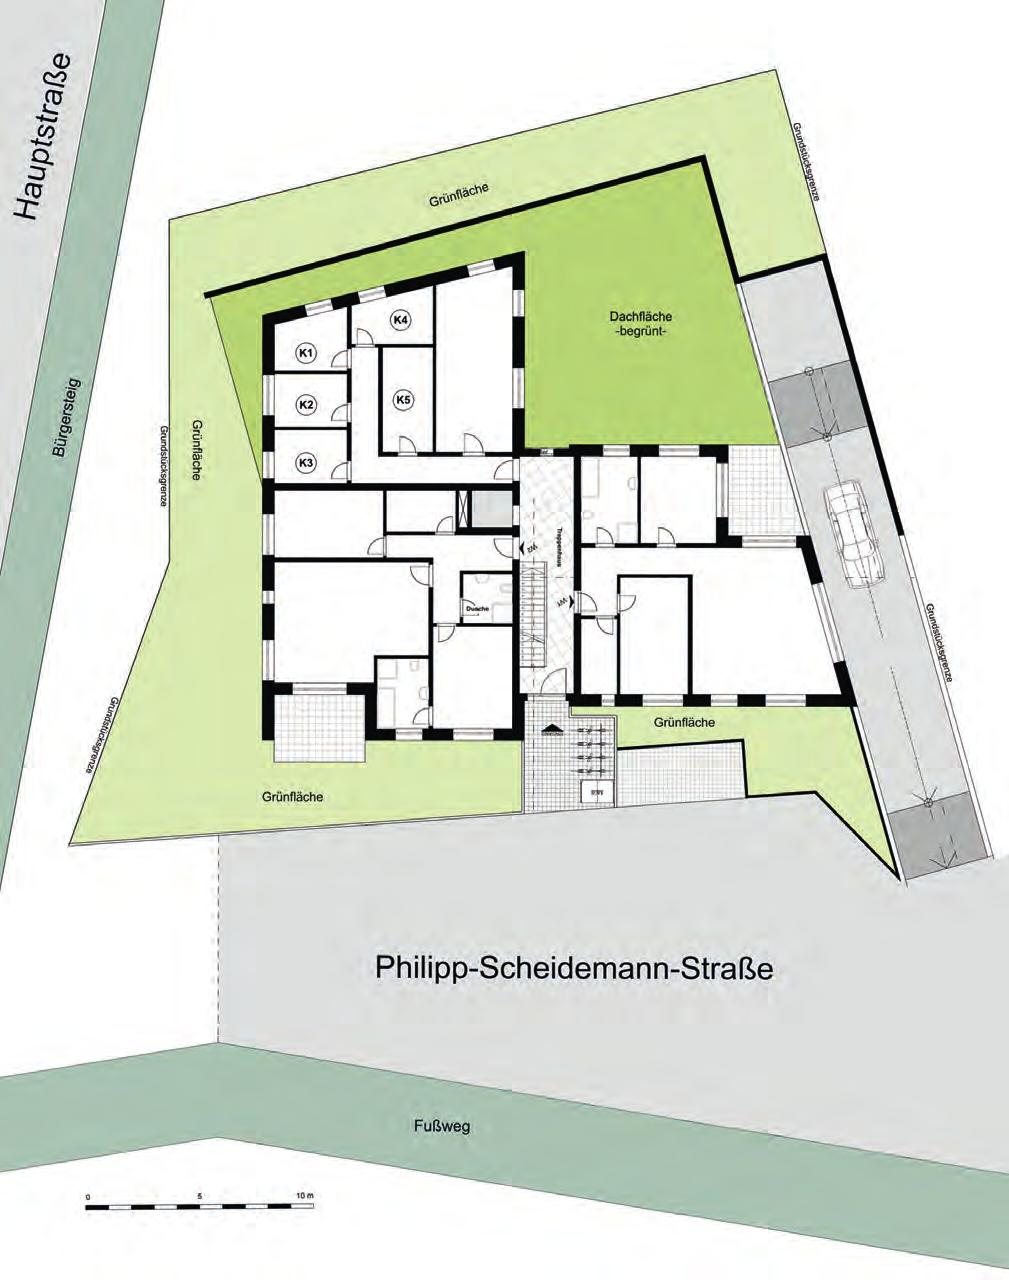 Philipp-Scheidemann-Straße 16 Neubau von 10 Eigentumswohnungen S W O N Keller KELLER Einfahrt Keller Keller Waschen Keller Flur Zimmer HWR Aufzug